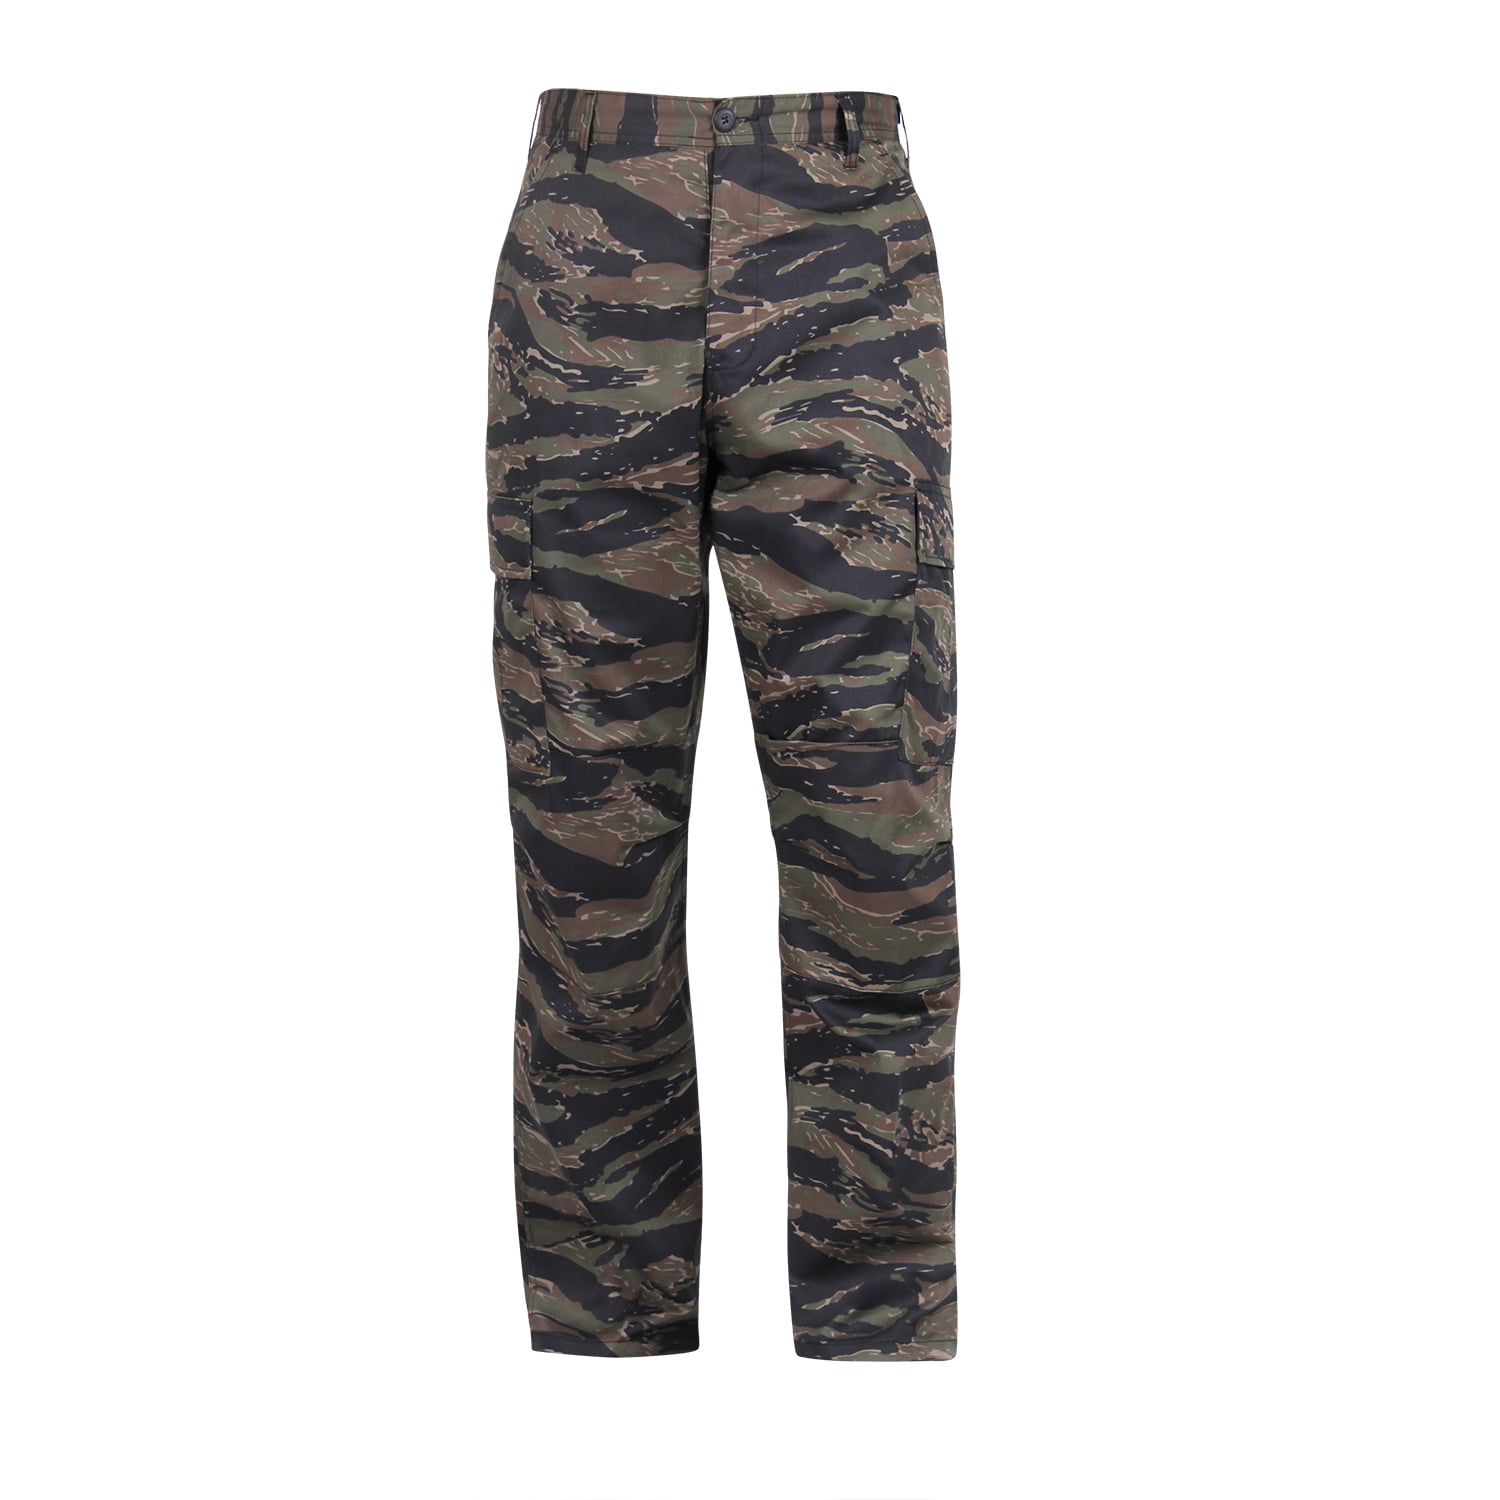 Rothco Camo BDU Pants,Tiger Stripe Camo,Medium - Walmart.com